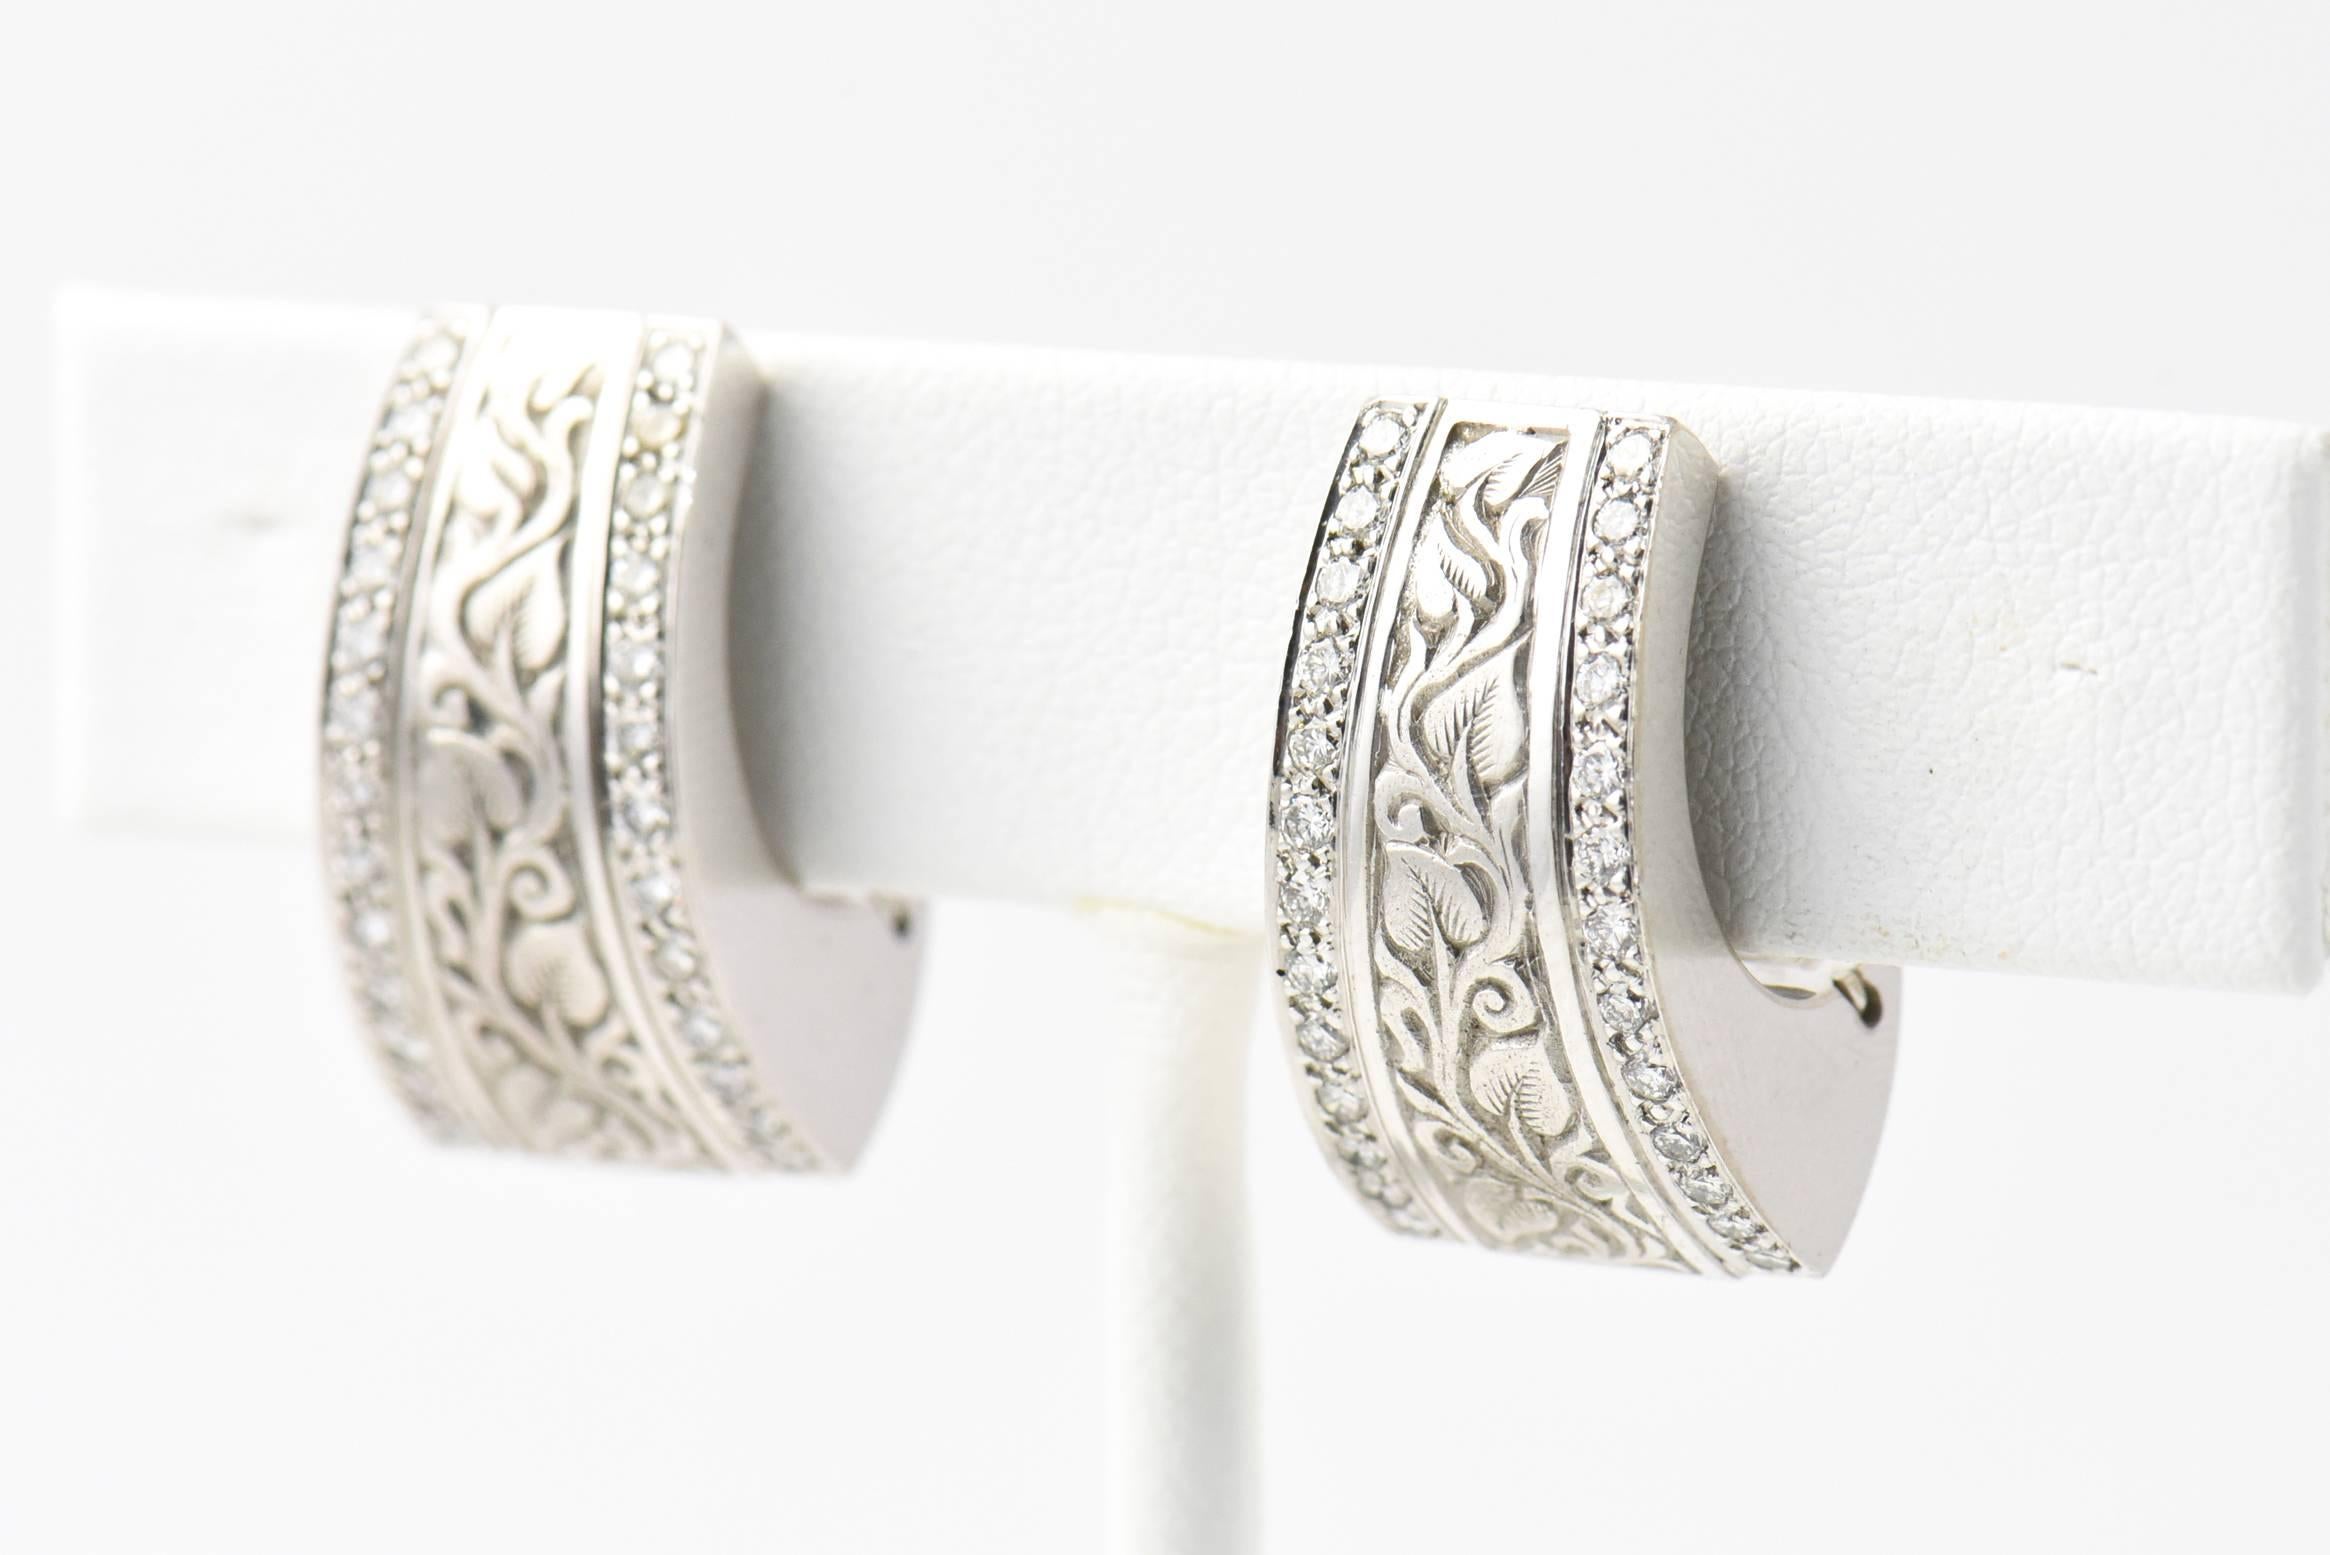 Engraved Vine Design Gold Earrings with Diamond Edges 4